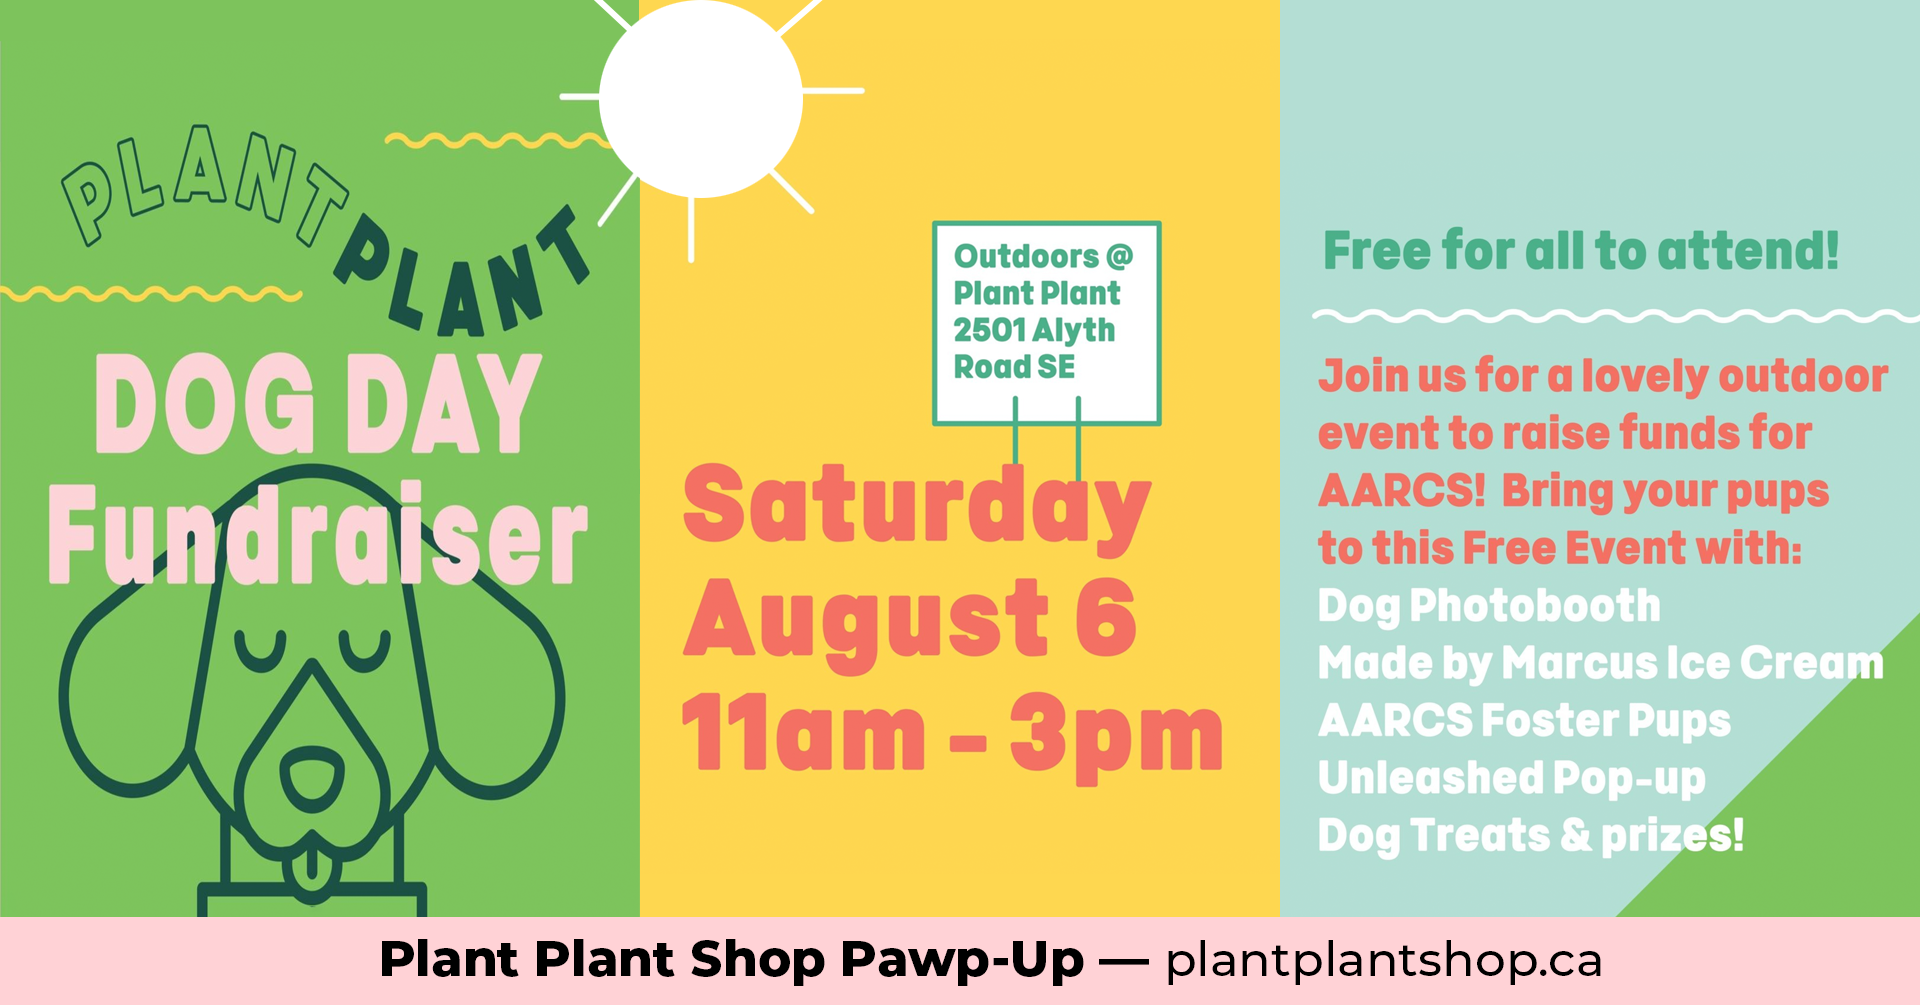 Plant Plant Shop Pawp-Up - AARCS